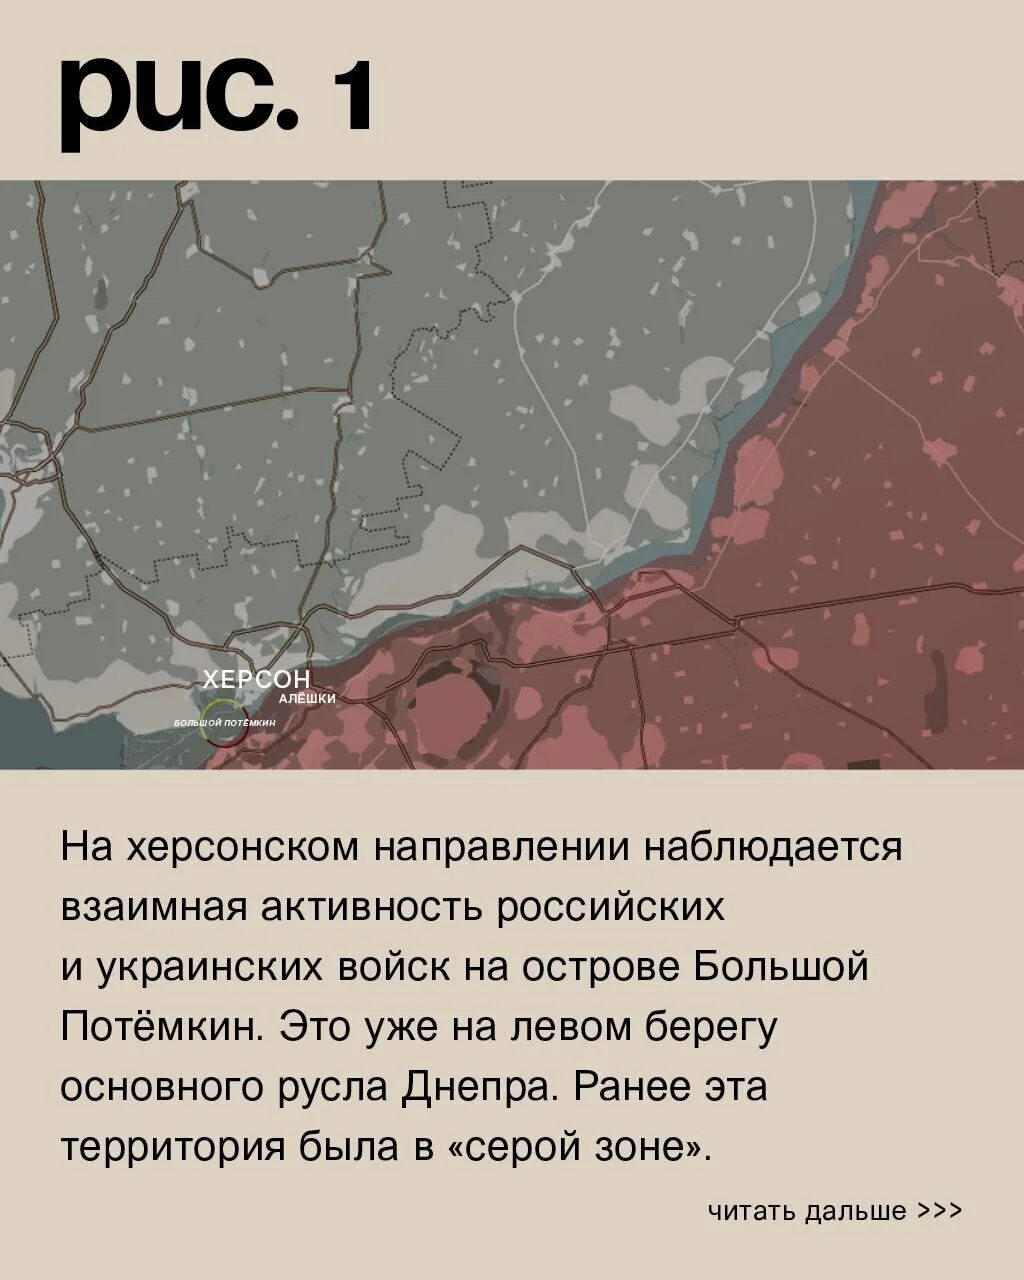 Варгонзо сводка на сегодня. Авдеевка линия фронта сейчас. Авдеевка на карте боевых действий. Карта наступления на Украину.